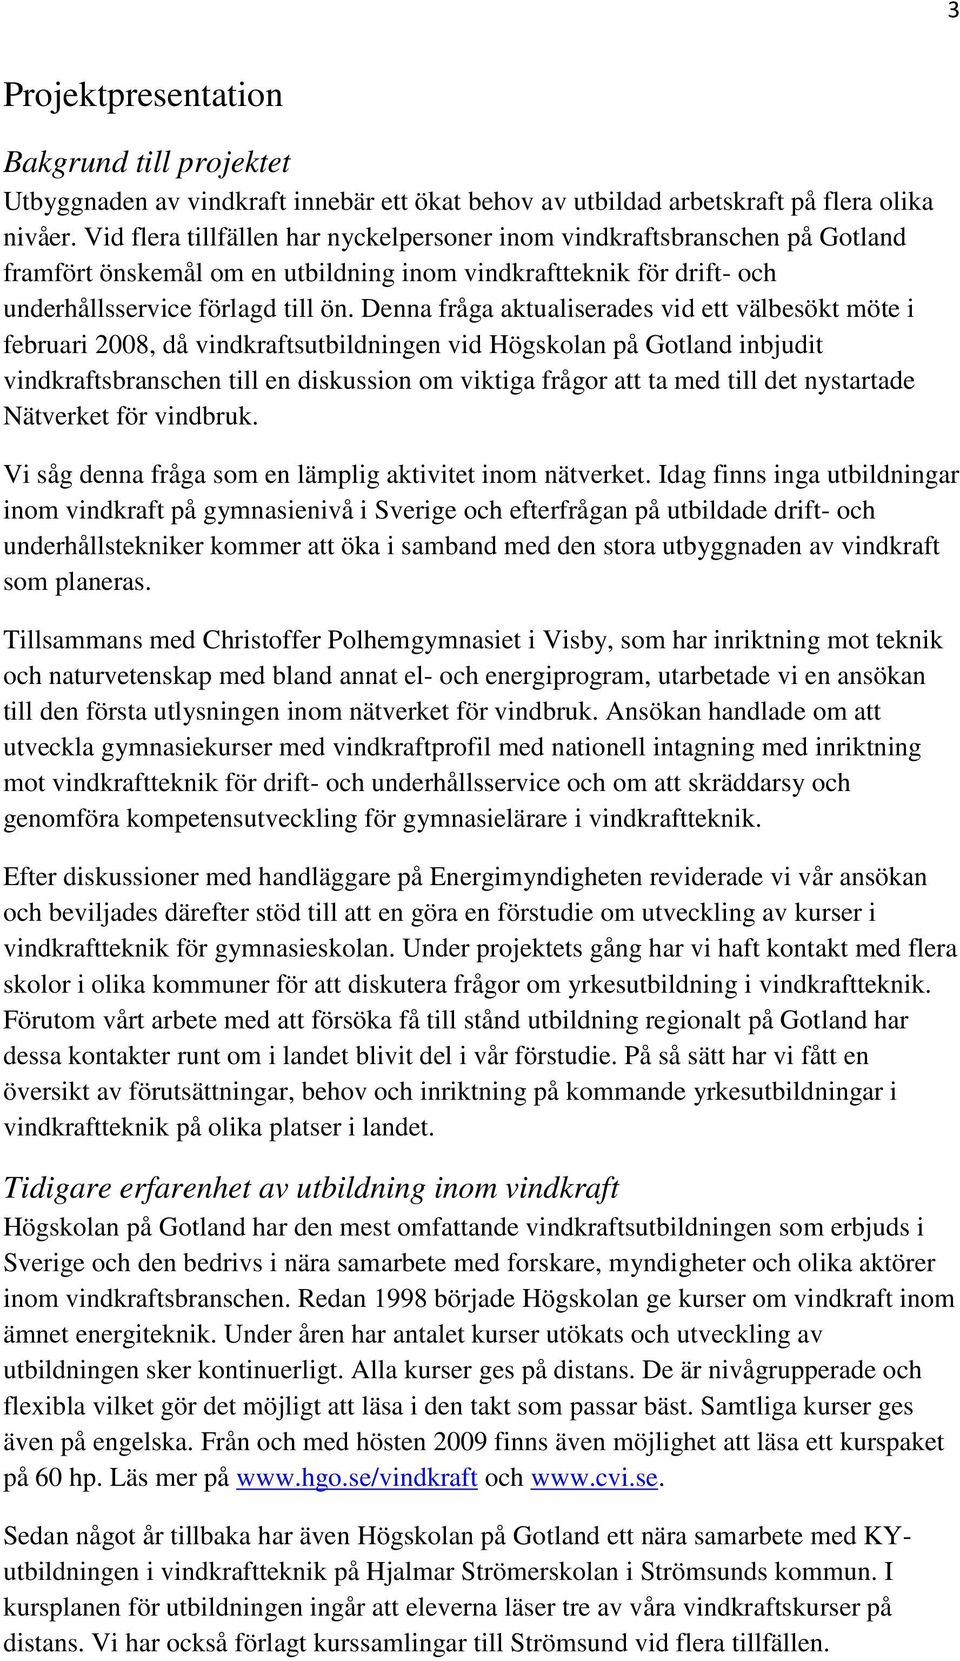 Denna fråga aktualiserades vid ett välbesökt möte i februari 2008, då vindkraftsutbildningen vid Högskolan på Gotland inbjudit vindkraftsbranschen till en diskussion om viktiga frågor att ta med till